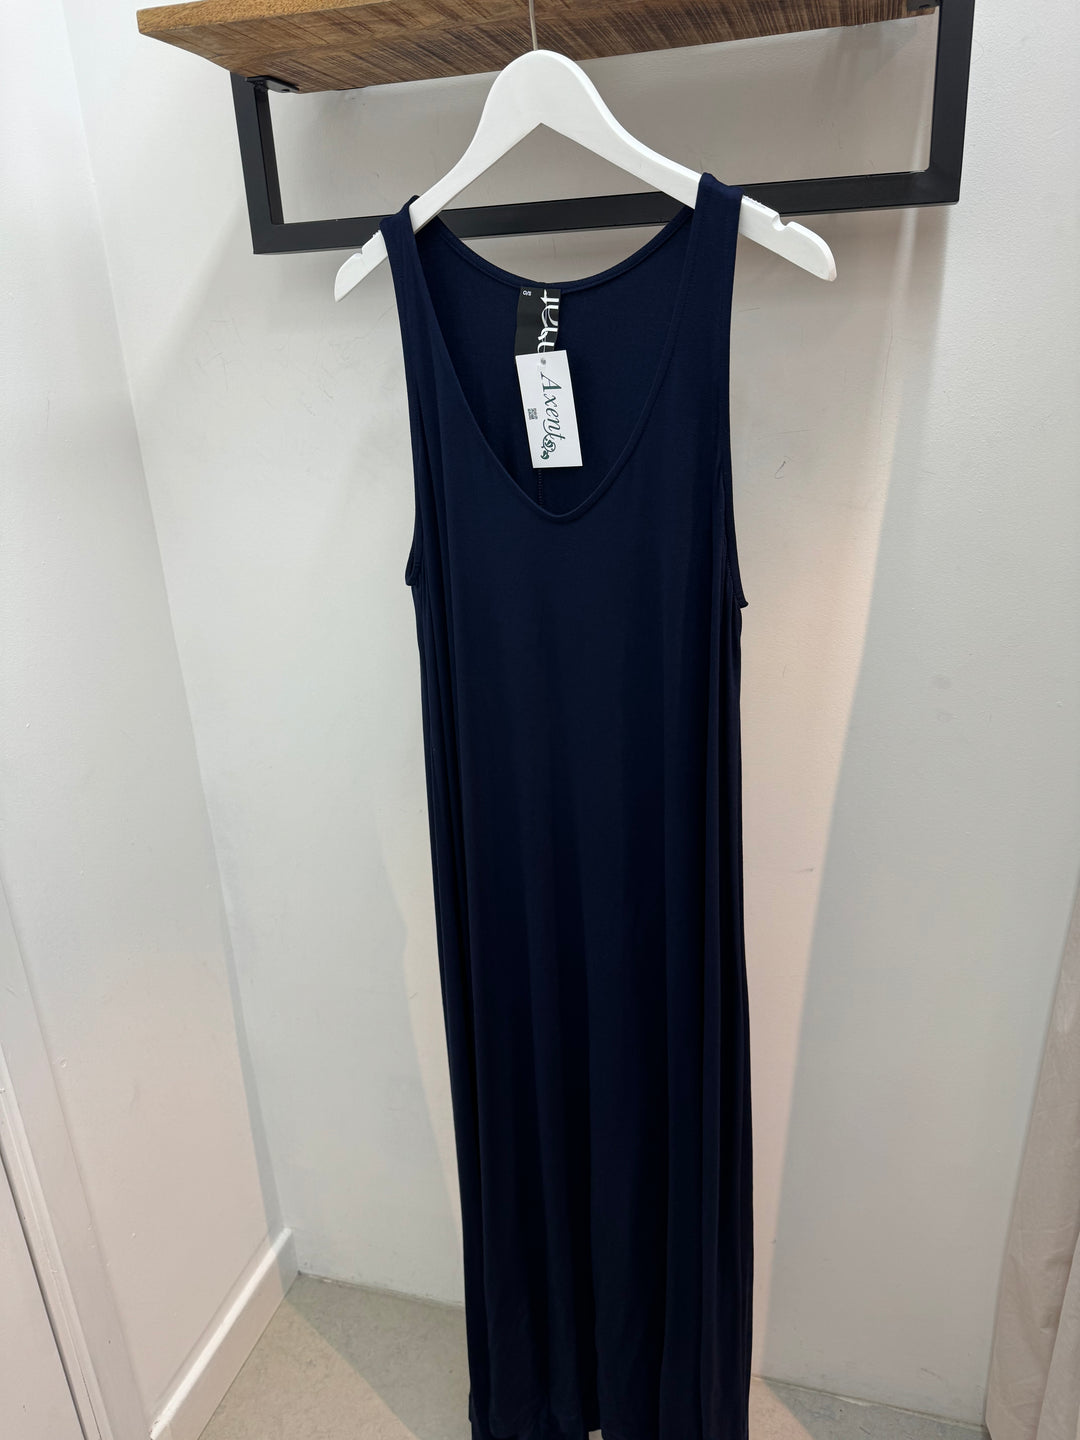 blauwe zomerse jurk - mat fashion - 0000.7502.C - blue - grote maten - dameskleding - kledingwinkel - herent - leuven